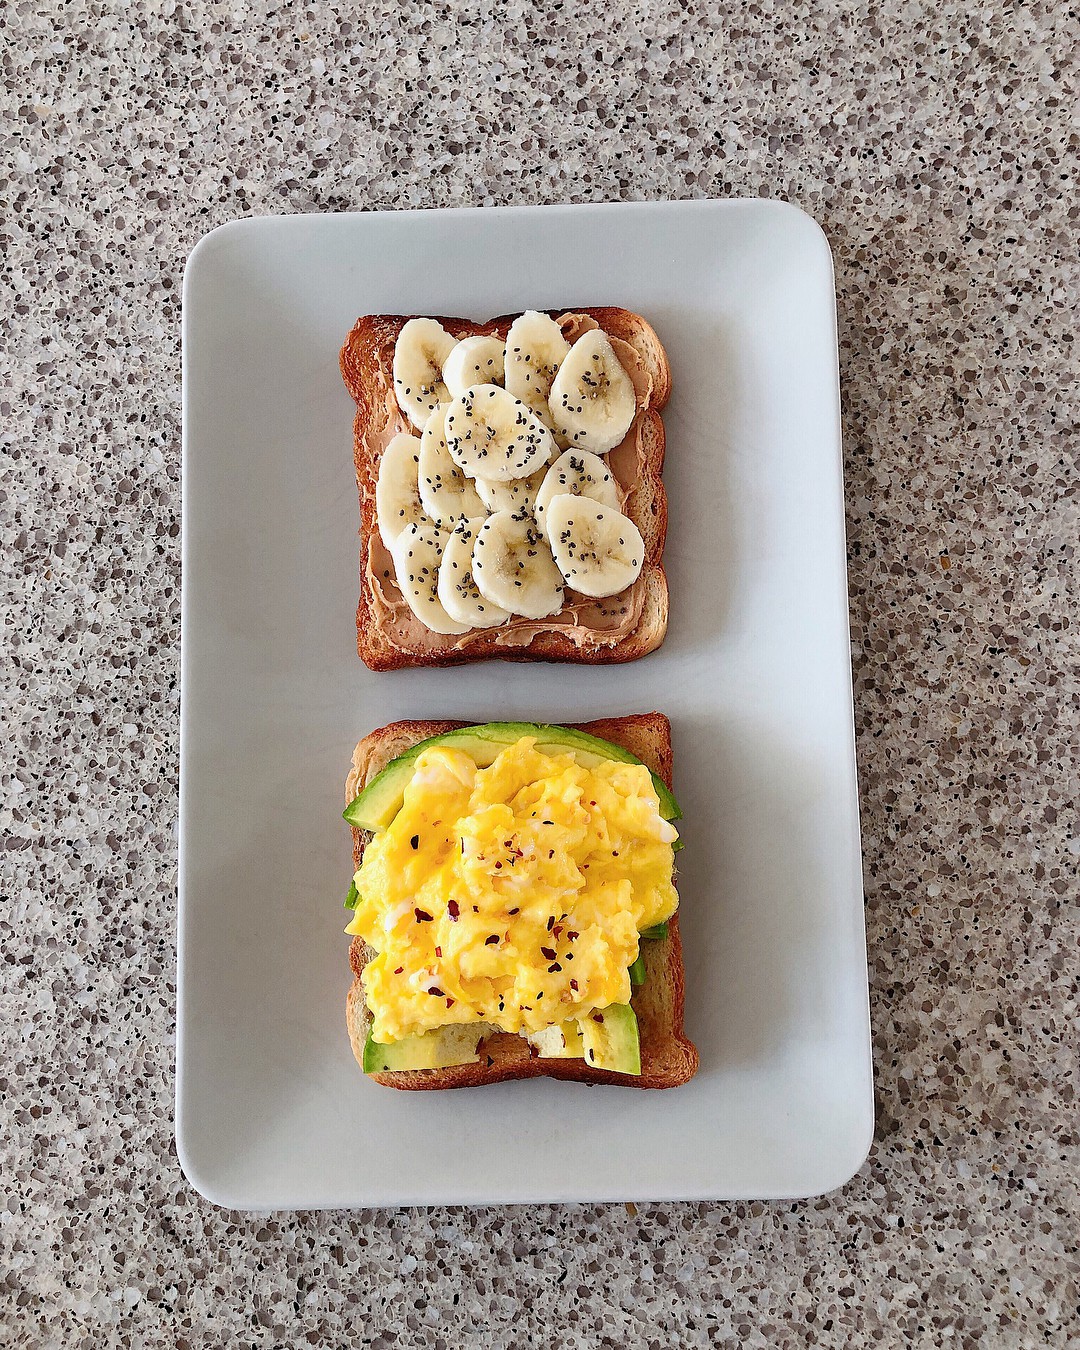 Học theo thực đơn bữa sáng nhanh gọn với quả bơ của Hà Tăng để giúp giữ dáng, đẹp da  - Ảnh 3.